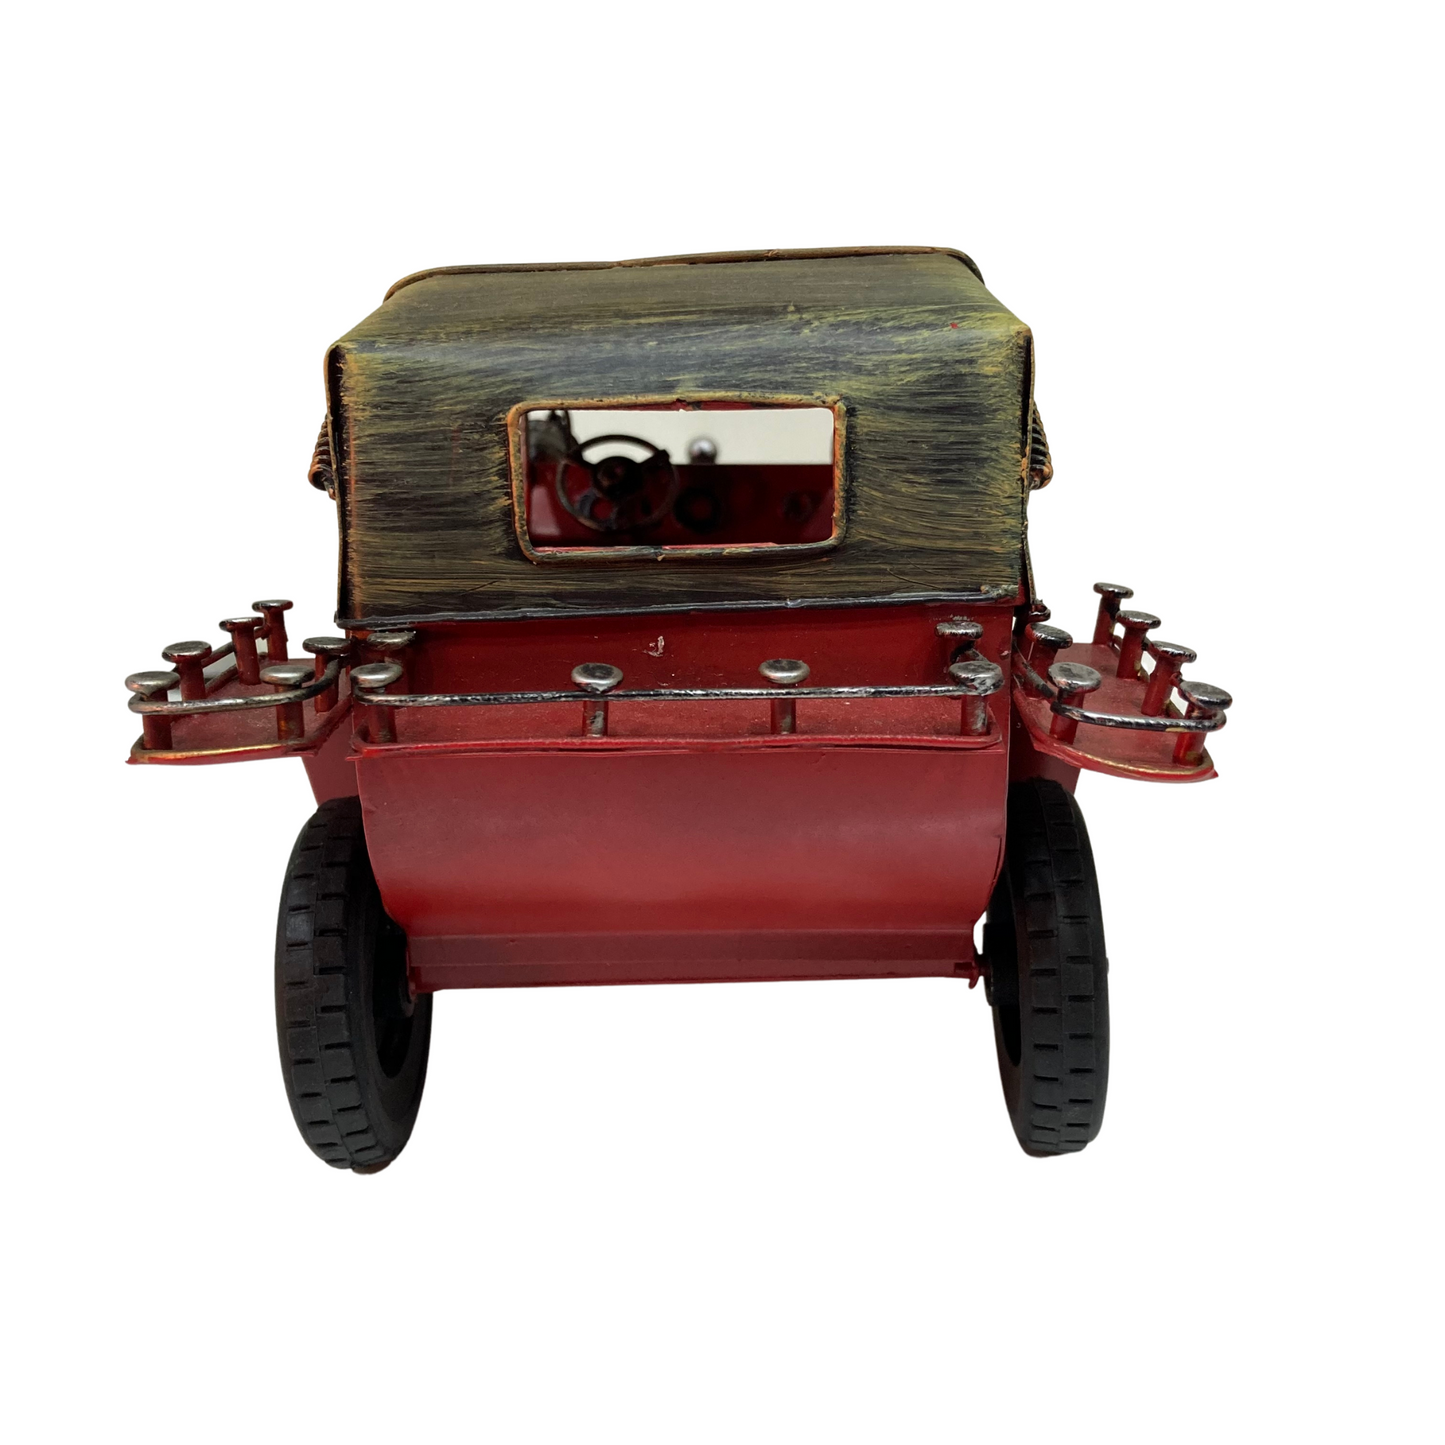 Vintage Style Metal Car - Red